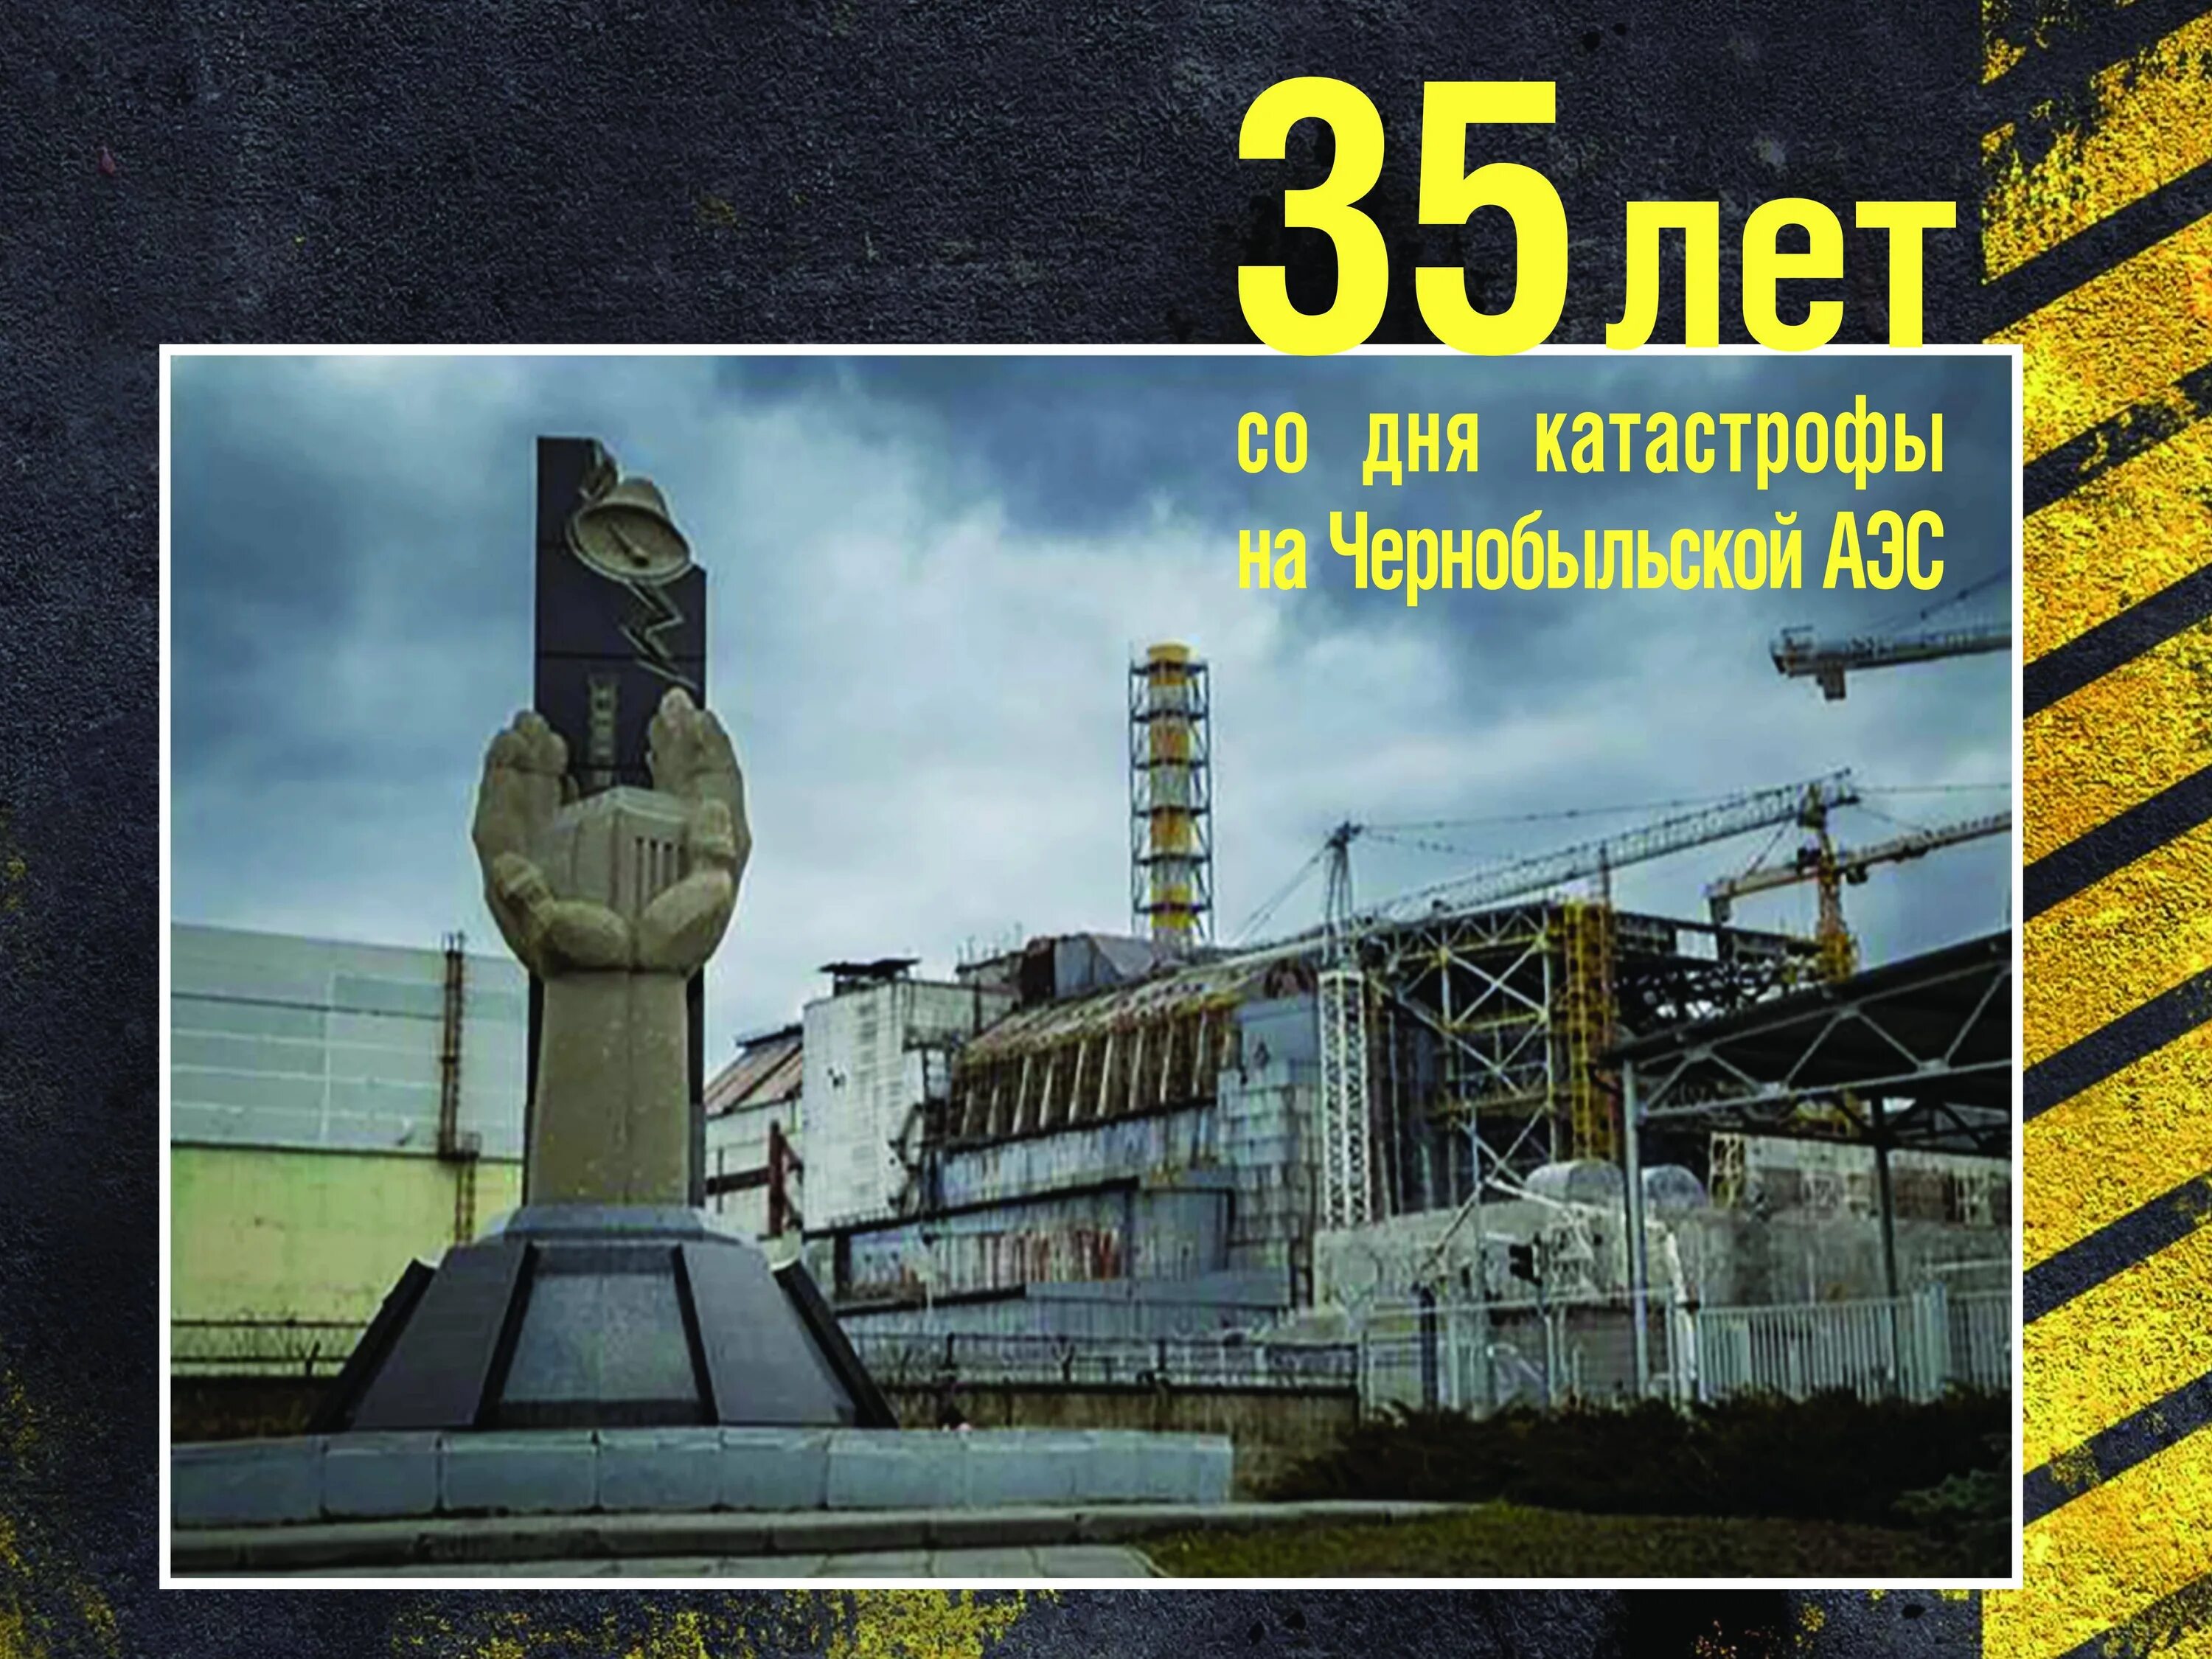 26 Апреля 1986 день памяти Чернобыльской АЭС. Чернобыль взрыв атомной станции 1986. ЧАЭС 26.04.1986. 35 Лет со дня аварии на Чернобыльской АЭС.